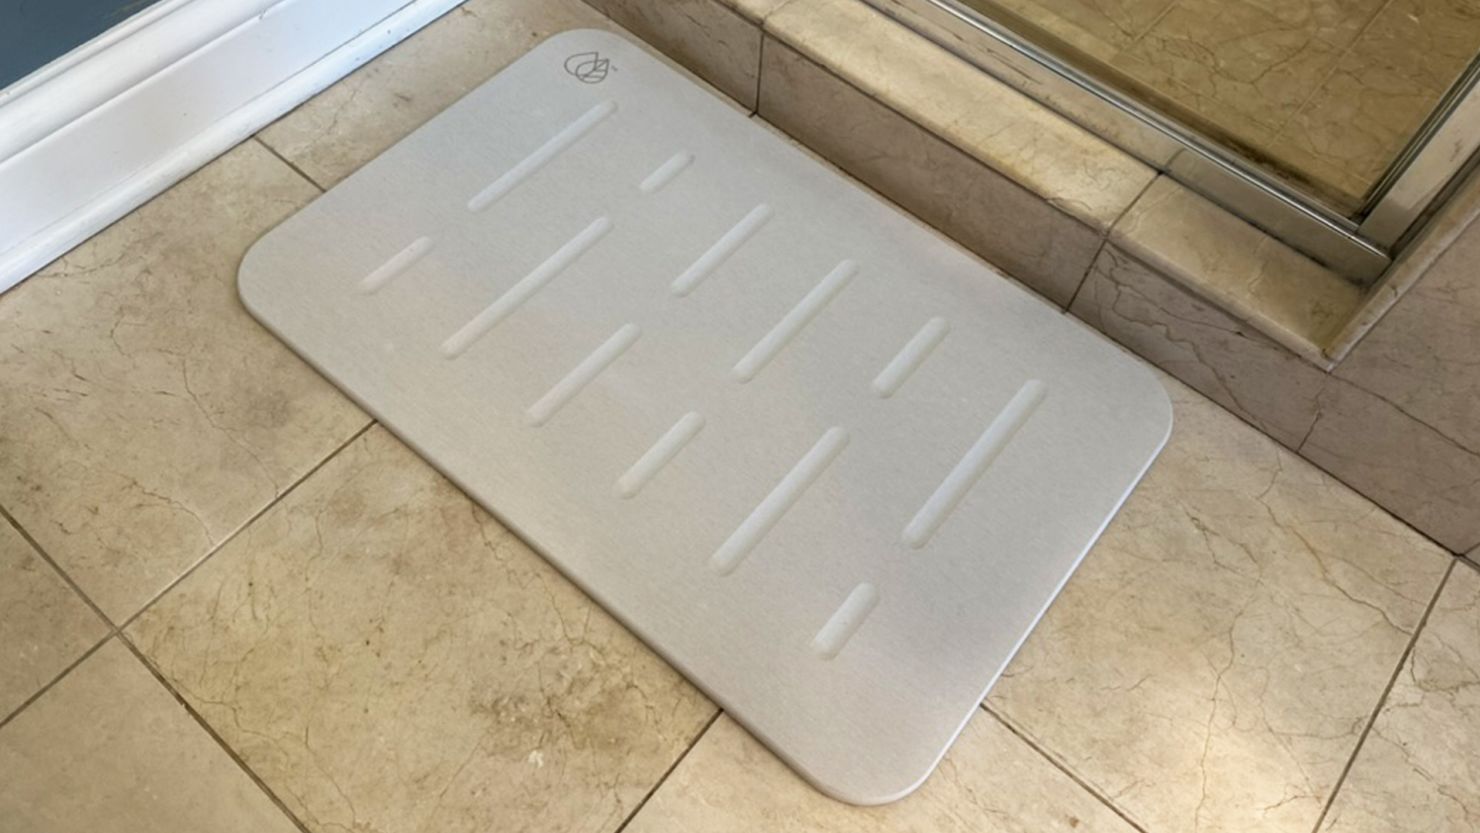 Finding the Best Non-Slip Bath Mat for Seniors